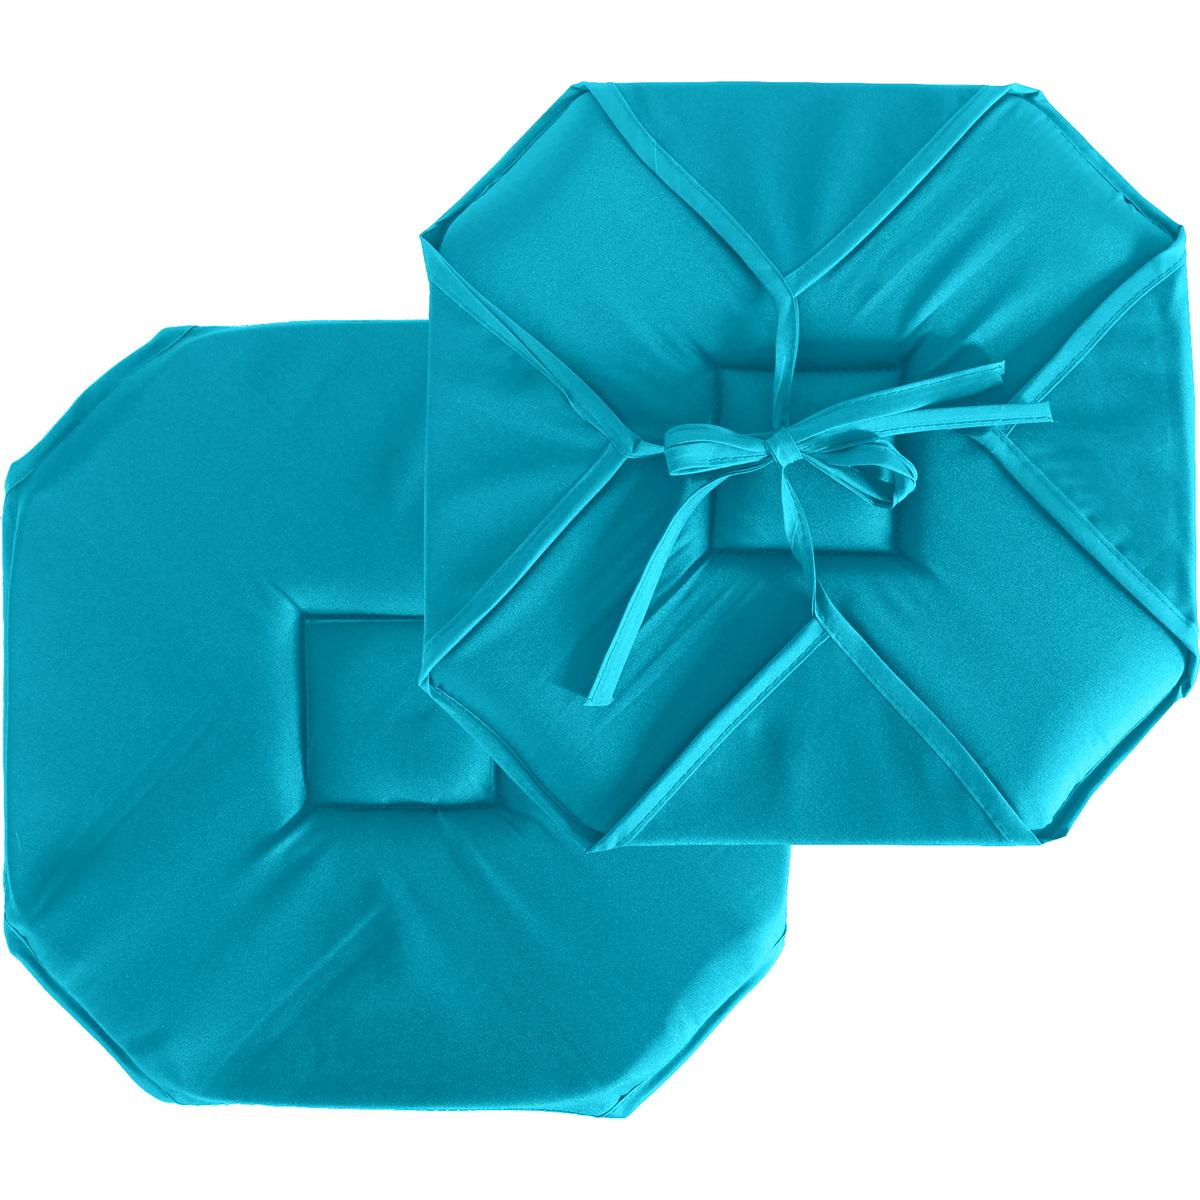 Galette de chaise - 100% polyester - 40 x 40 cm - Bleu